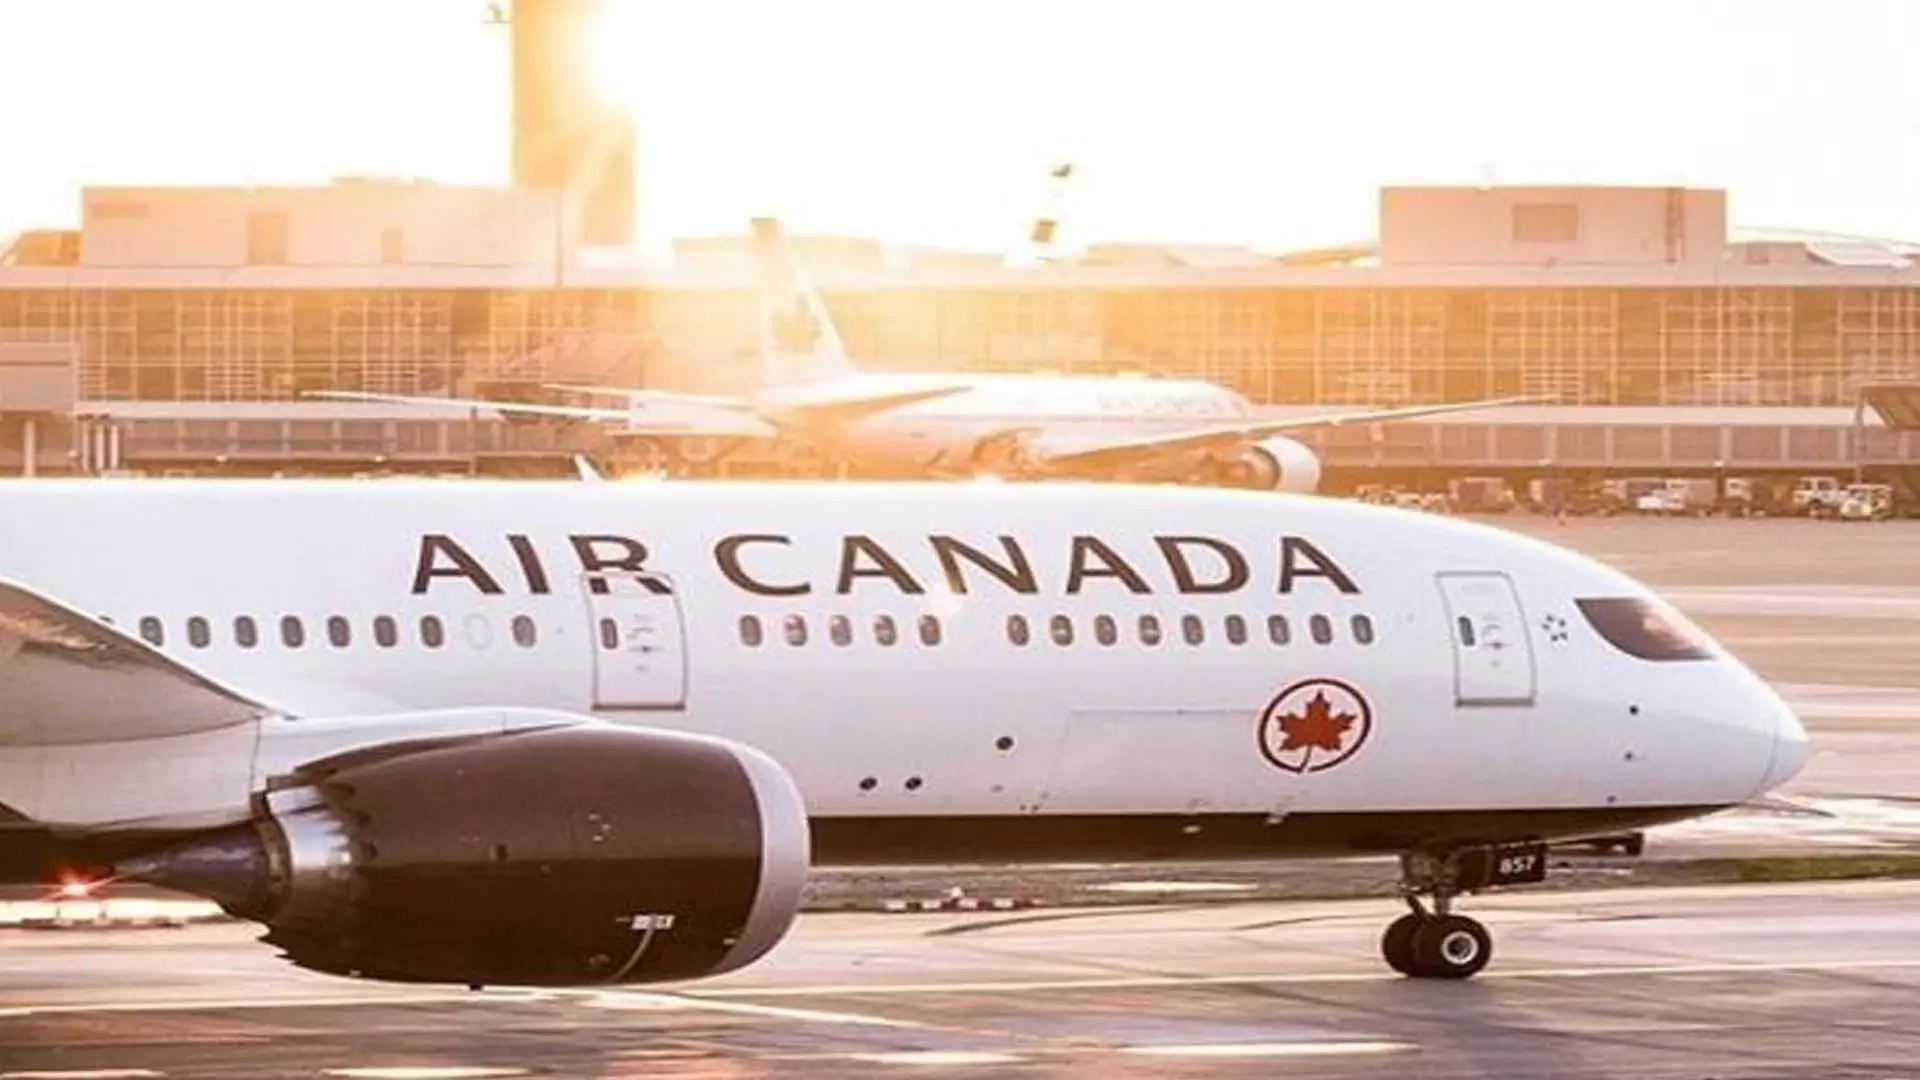 Air Canada ने सीट क्षमता बढ़ाकर भारत के लिए अपने उड़ान नेटवर्क के विस्तार की घोषणा की